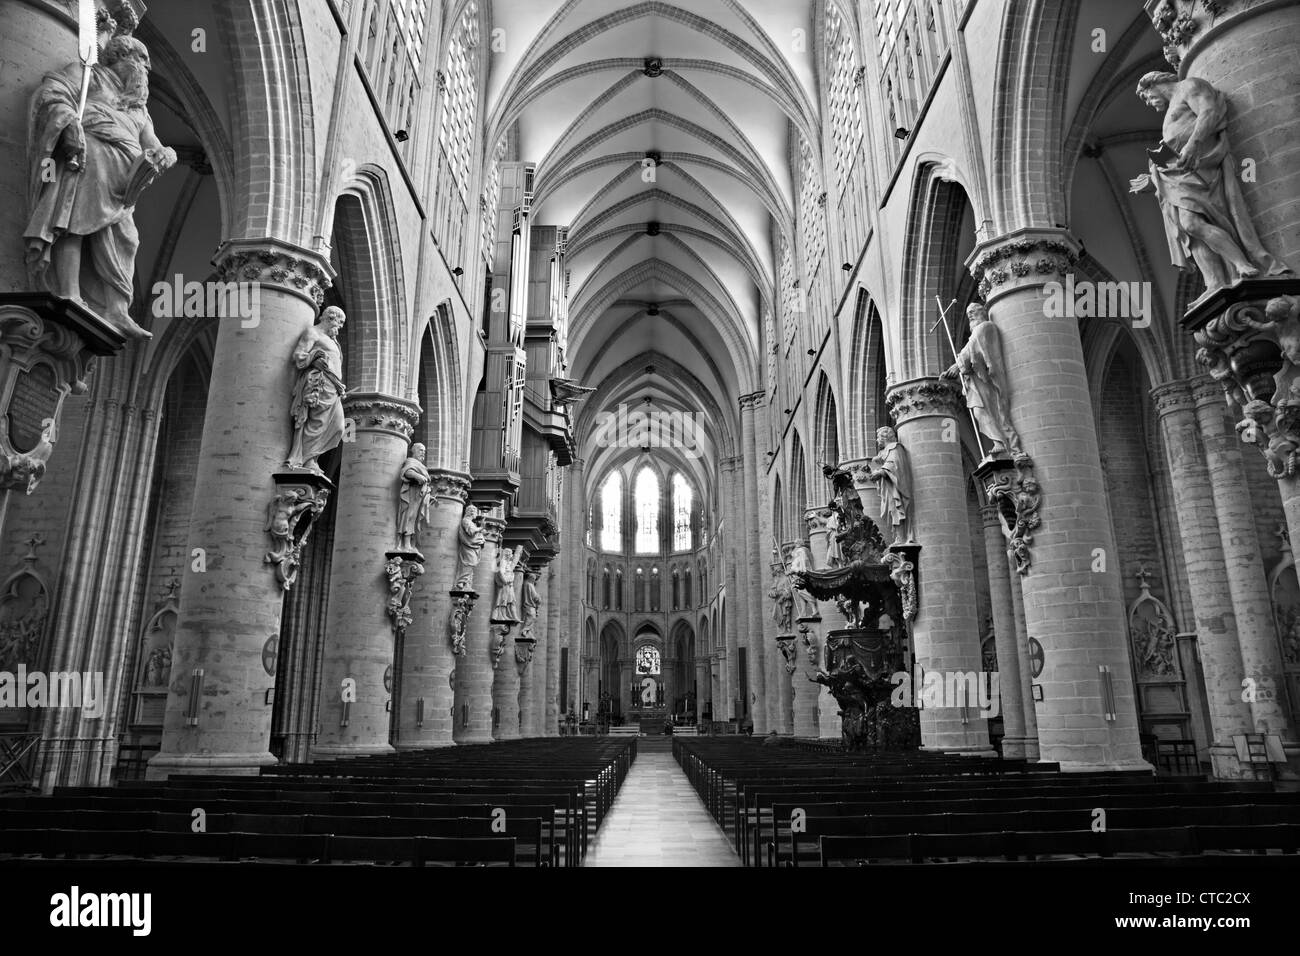 Bruxelles - 22 giugno: navata gotica della Cattedrale di Saint Michael il 22 giugno 2012 a Bruxelles. Foto Stock